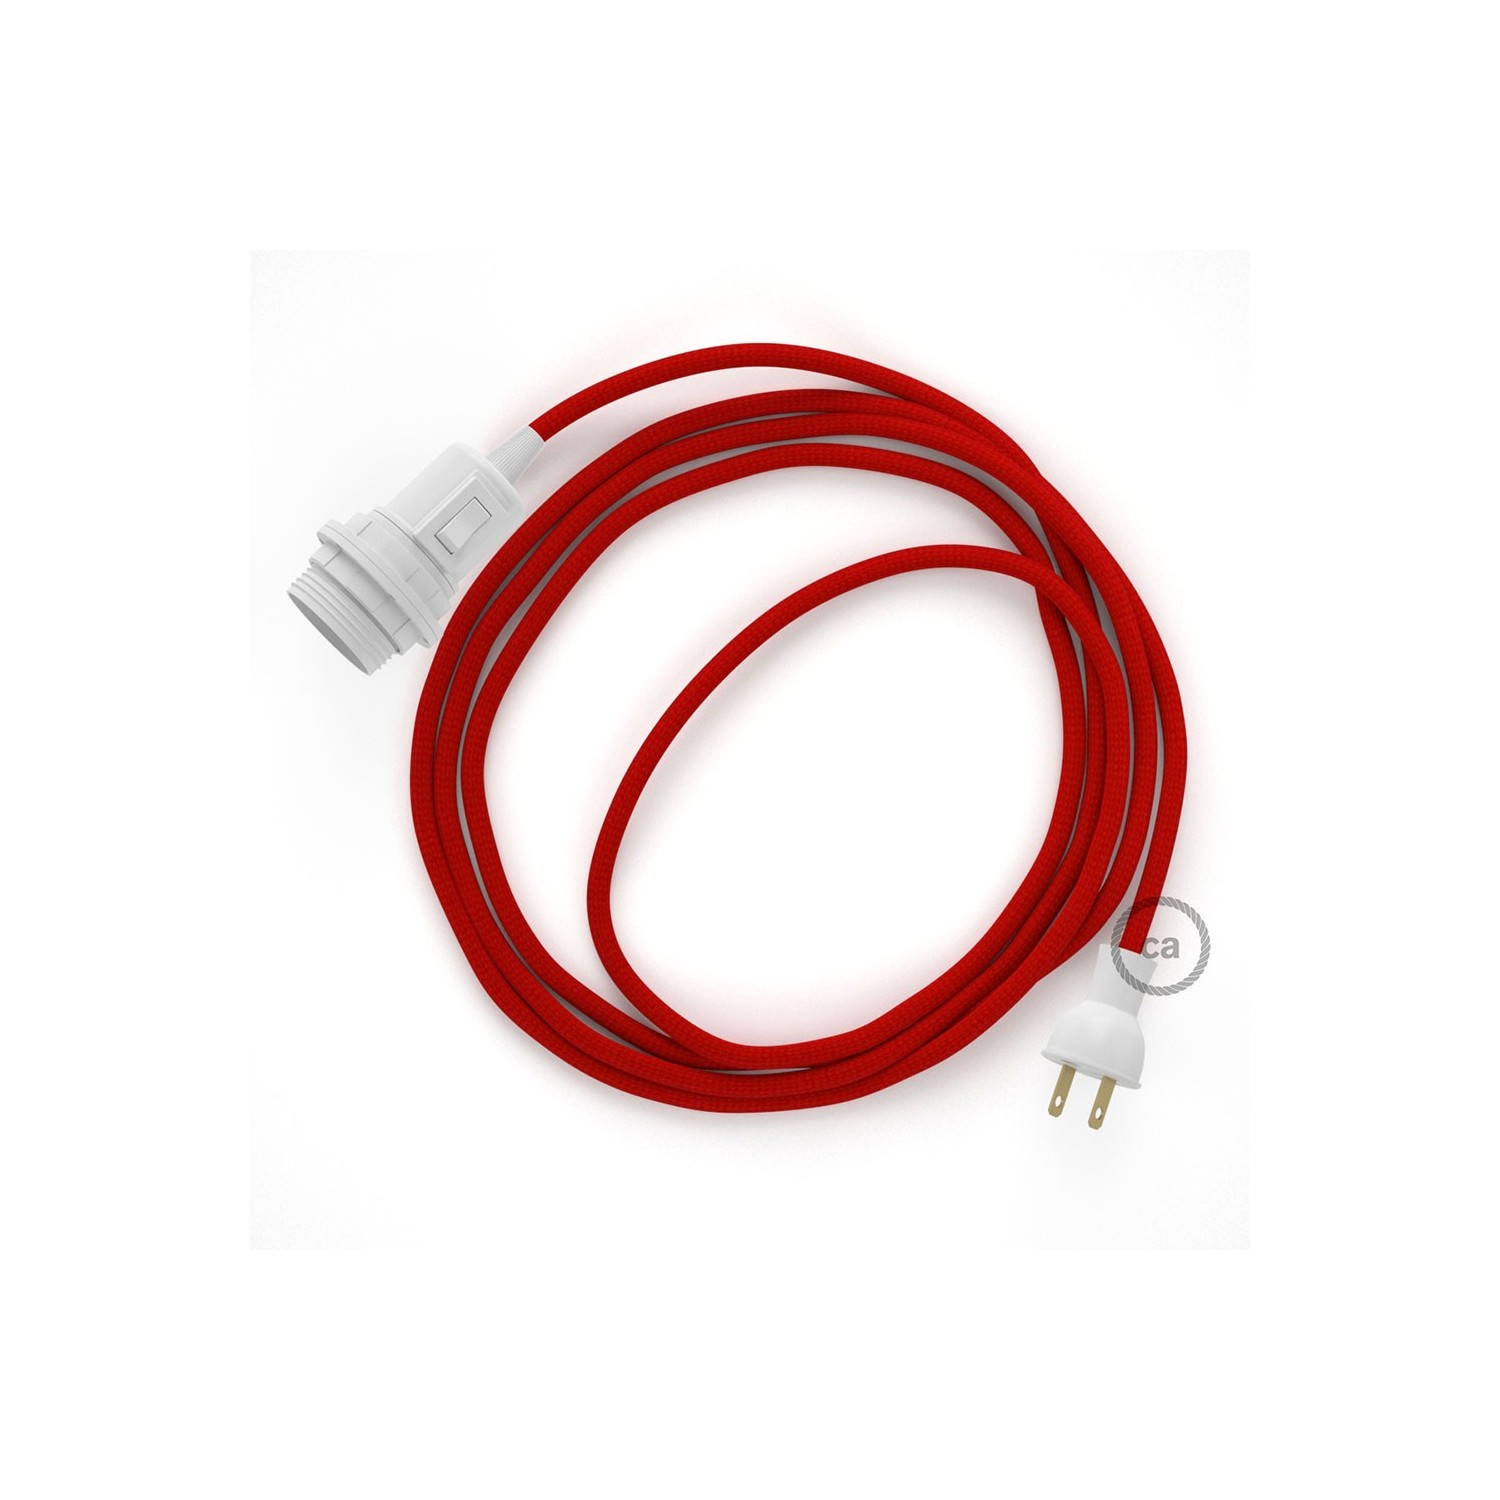 Crea tu Snake para pantalla con cable de Rayón Rojo RM09, socket y enchufe,  y trae